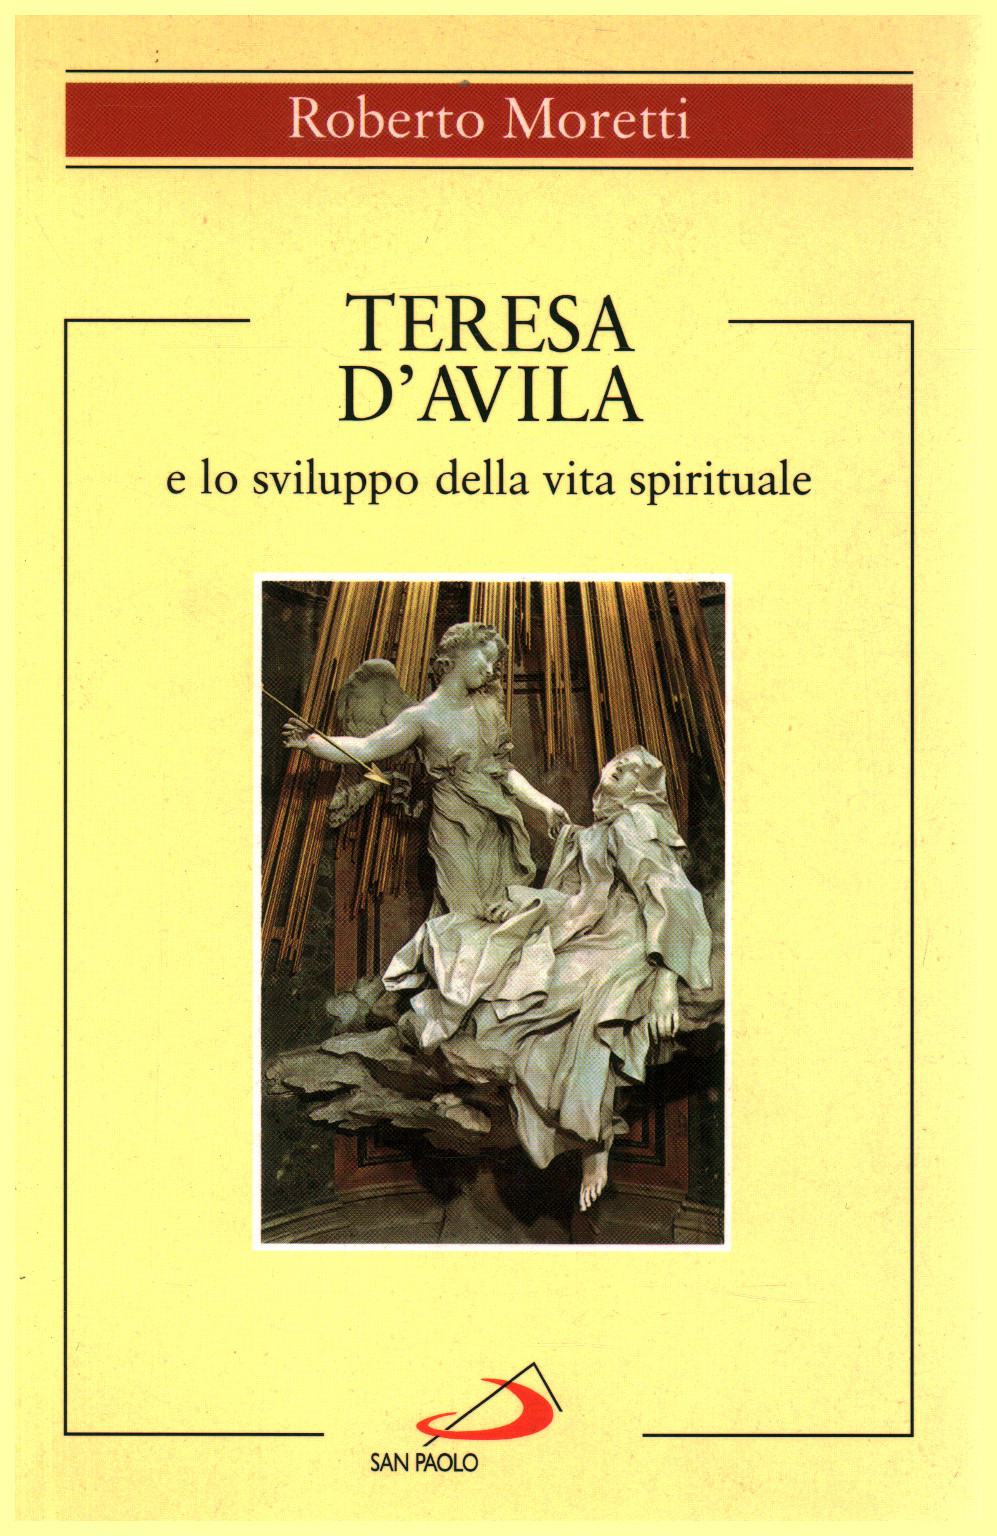 Teresa of Avila and development